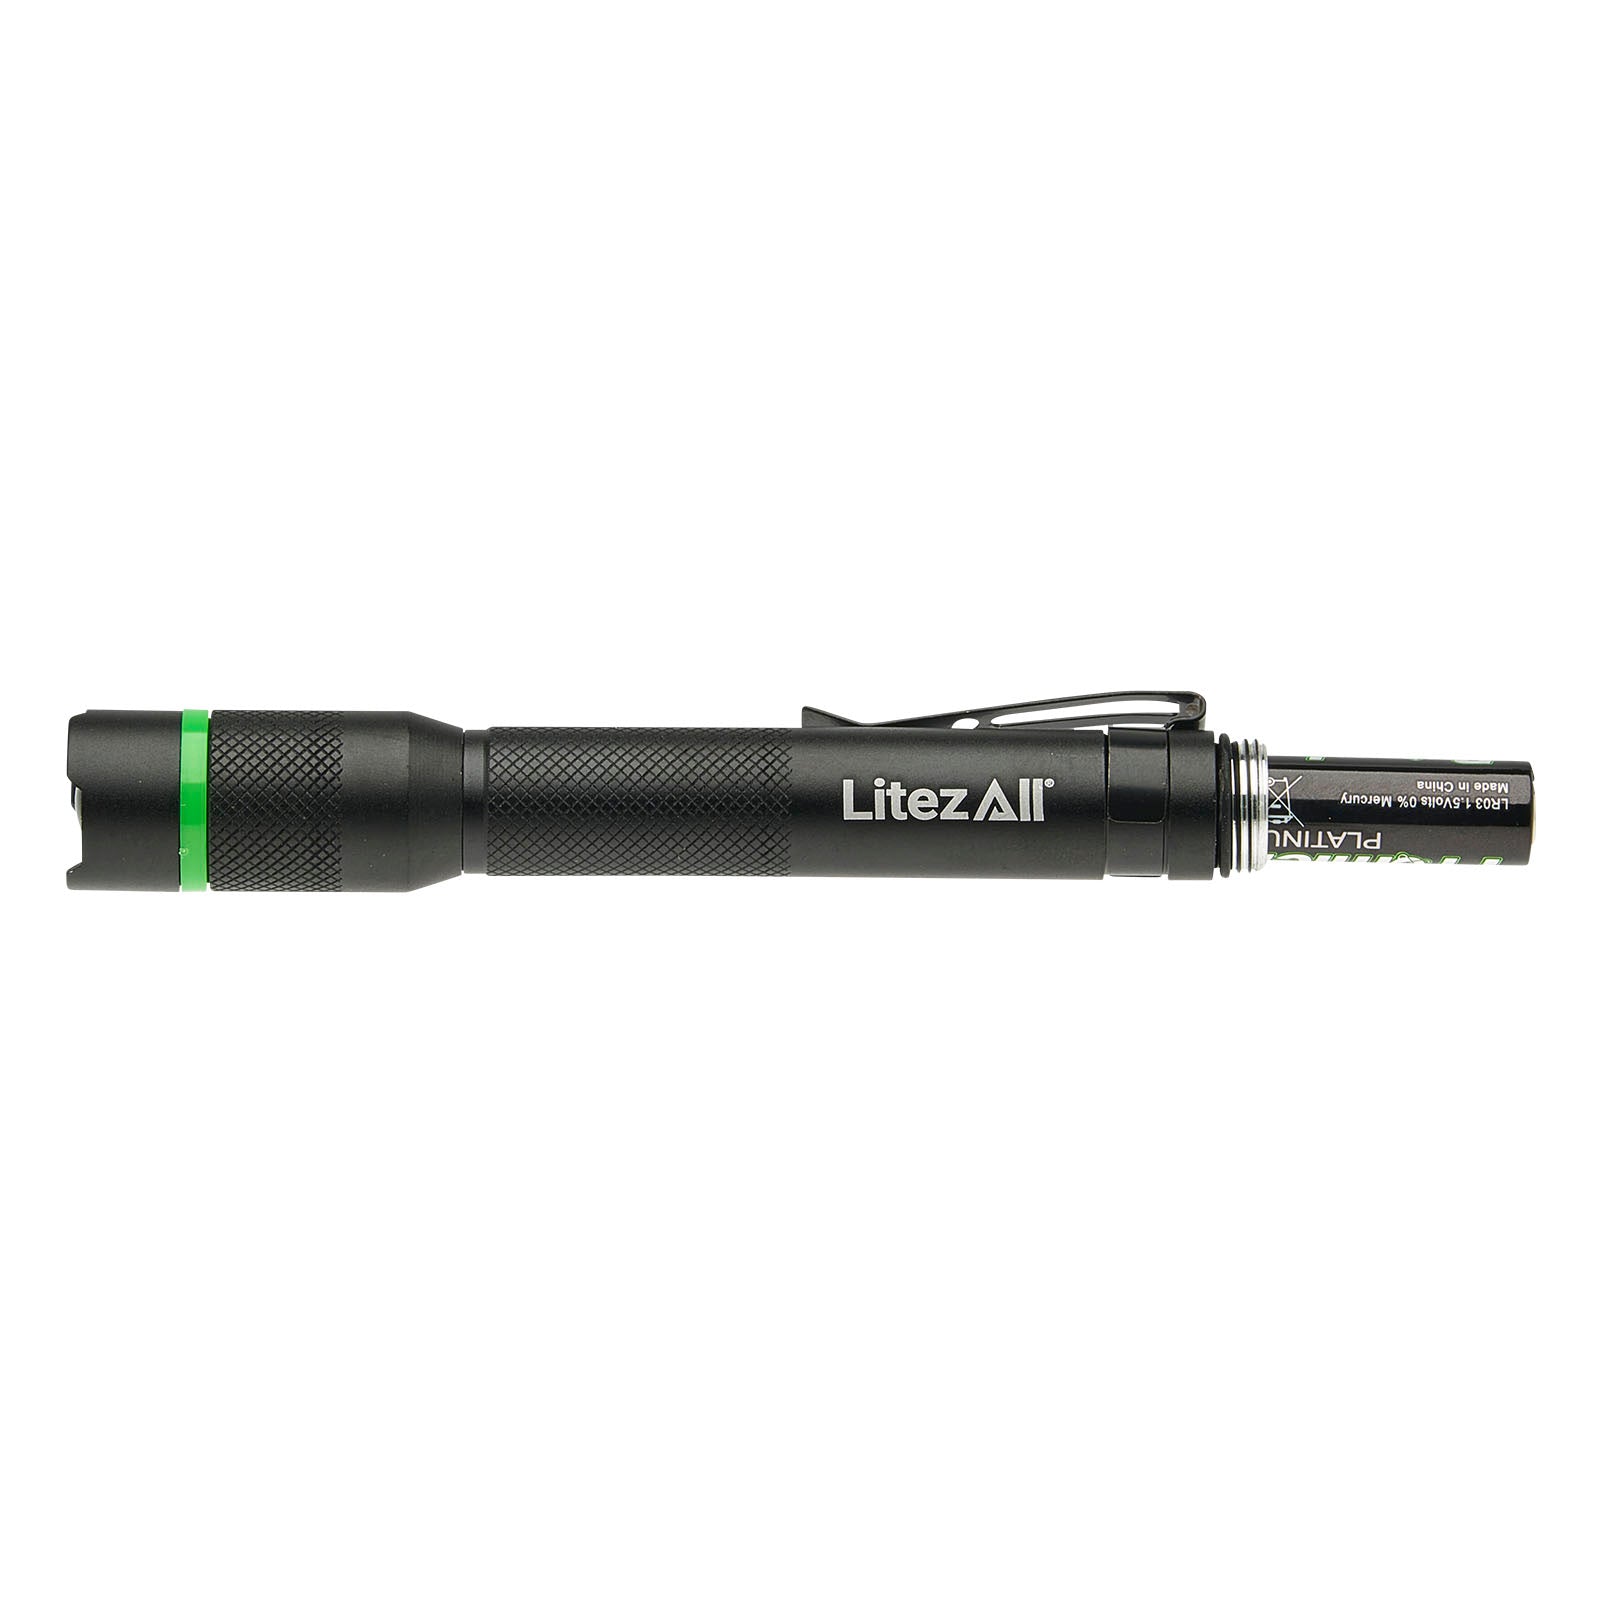 LitezAll 250 Lumen Pen Light - LitezAll - Pen Light - 15